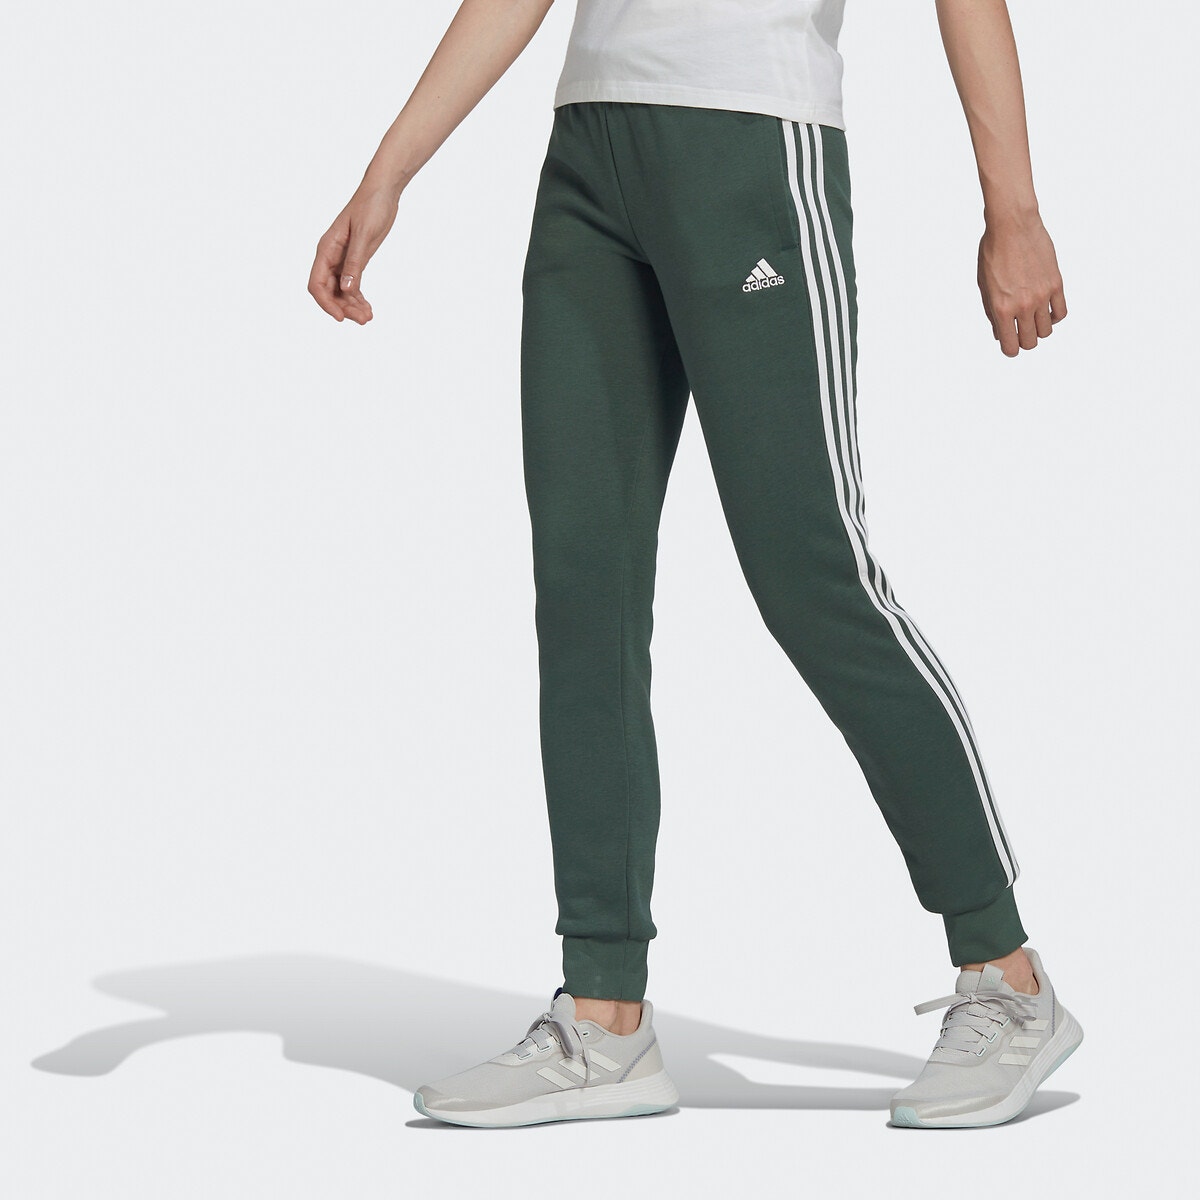 Bas jogging essentials fleece 3-stripes vert foncé Performance | La Redoute